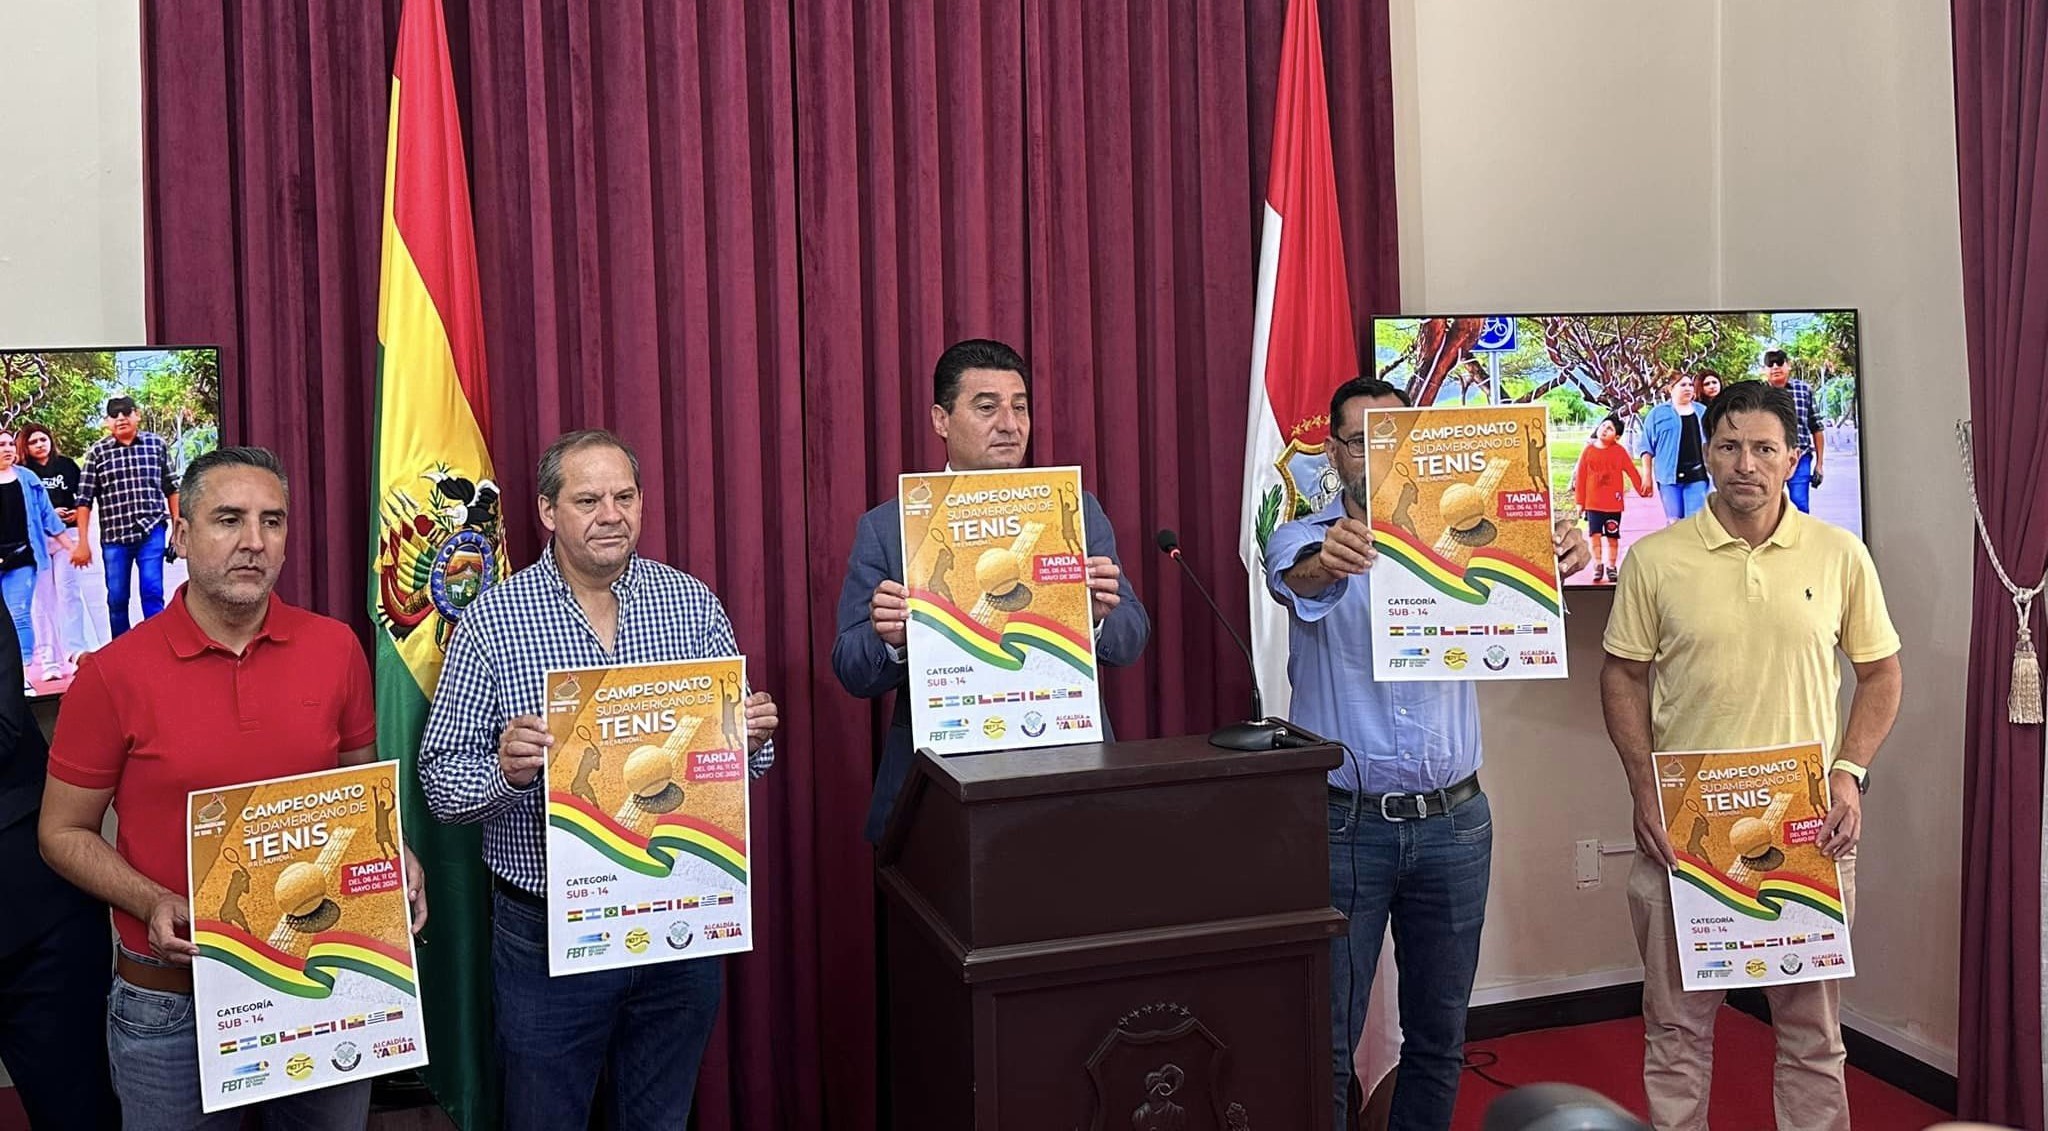 “Tarija será sede del campeonato sudamericano de tenis categoría 14 años en damas y varones”